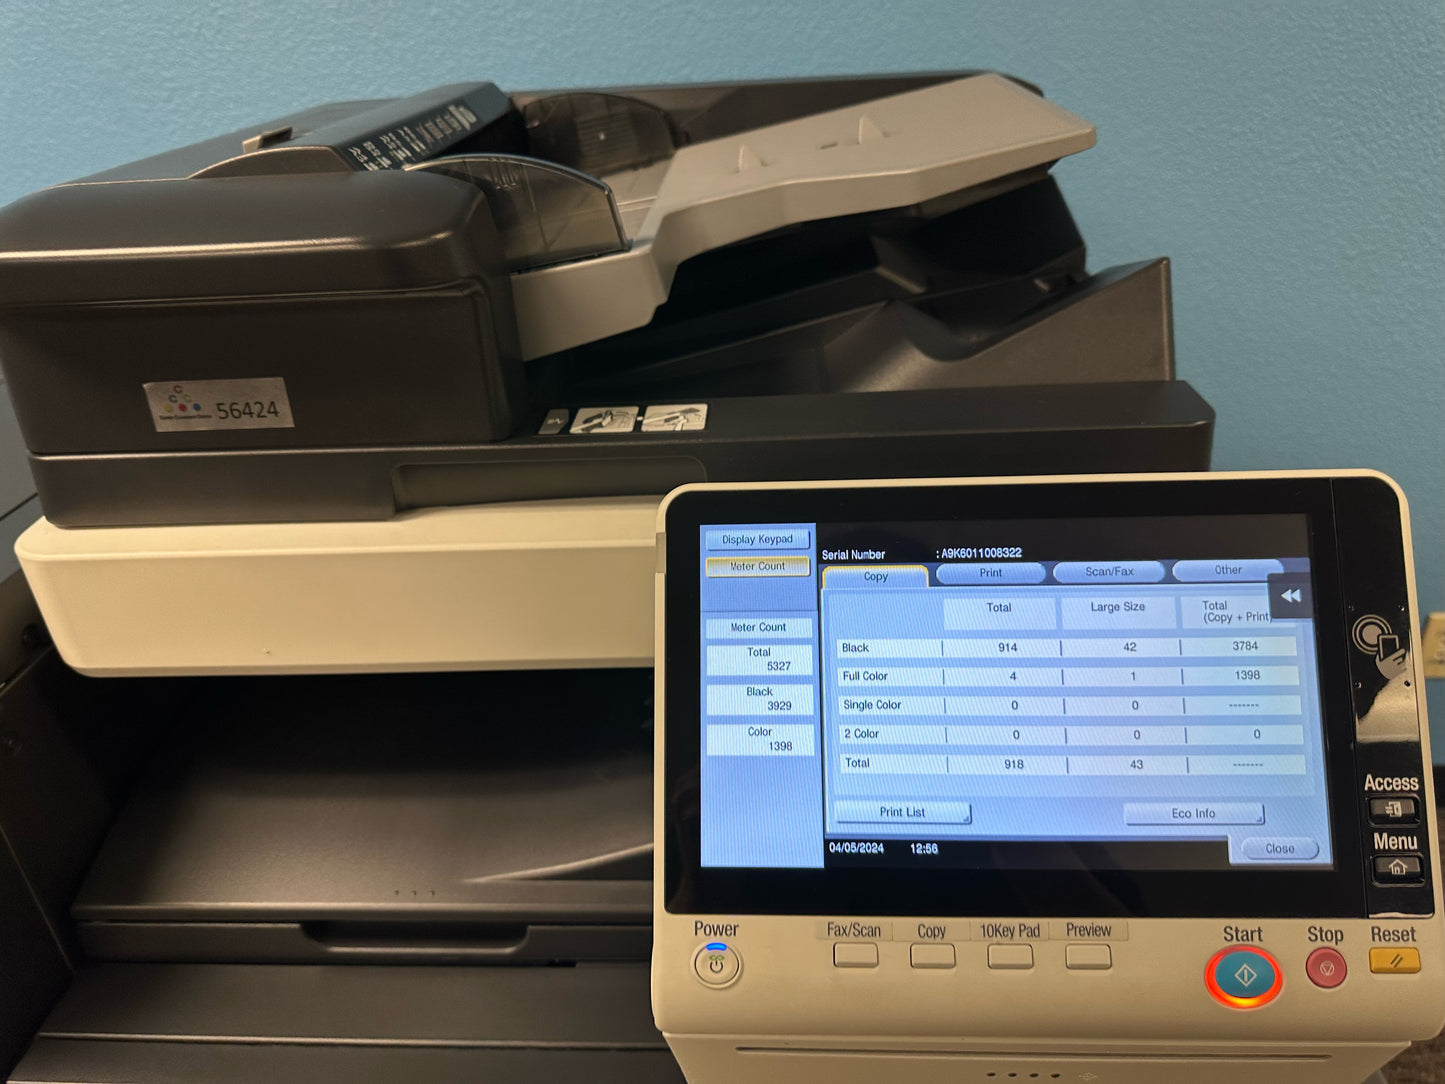 Demo Konica Minolta Bizhub C659 Copier Printer Scanner Fax Booklet Finisher Only 5k